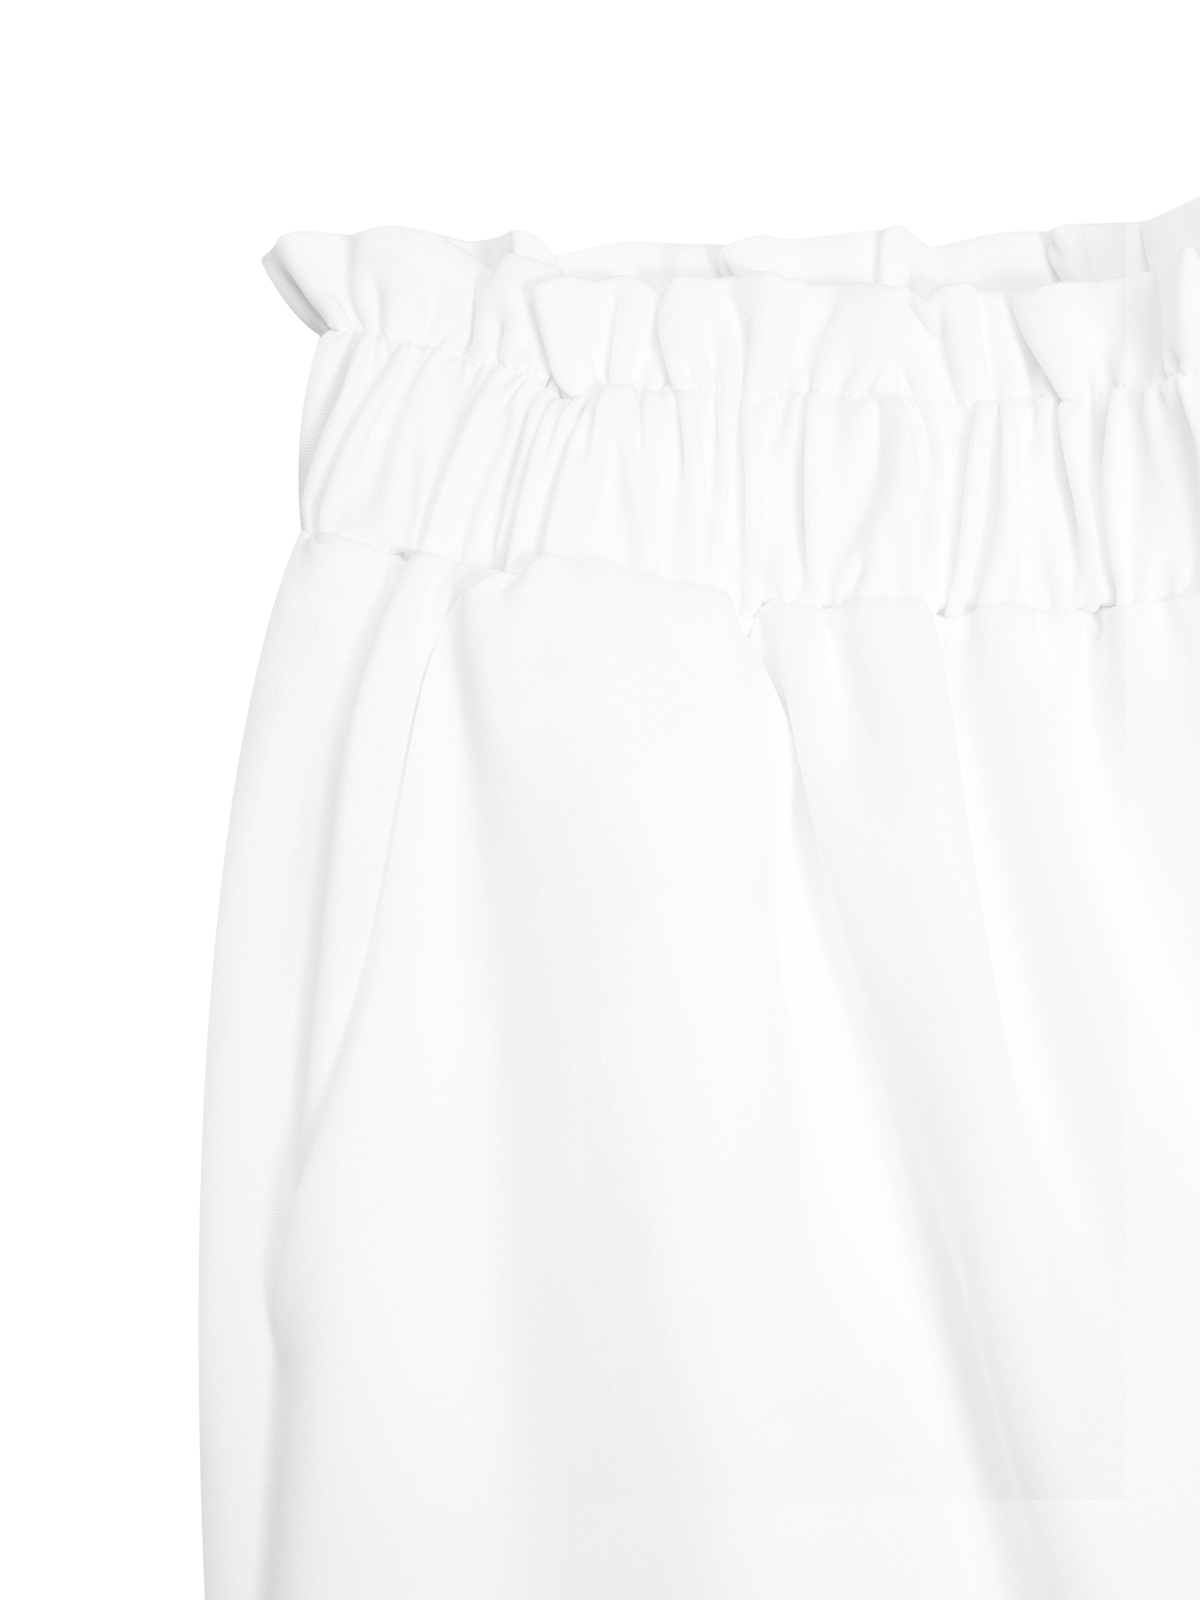 Cotton Casual Plain Paperbag Waist Wide Leg Pants